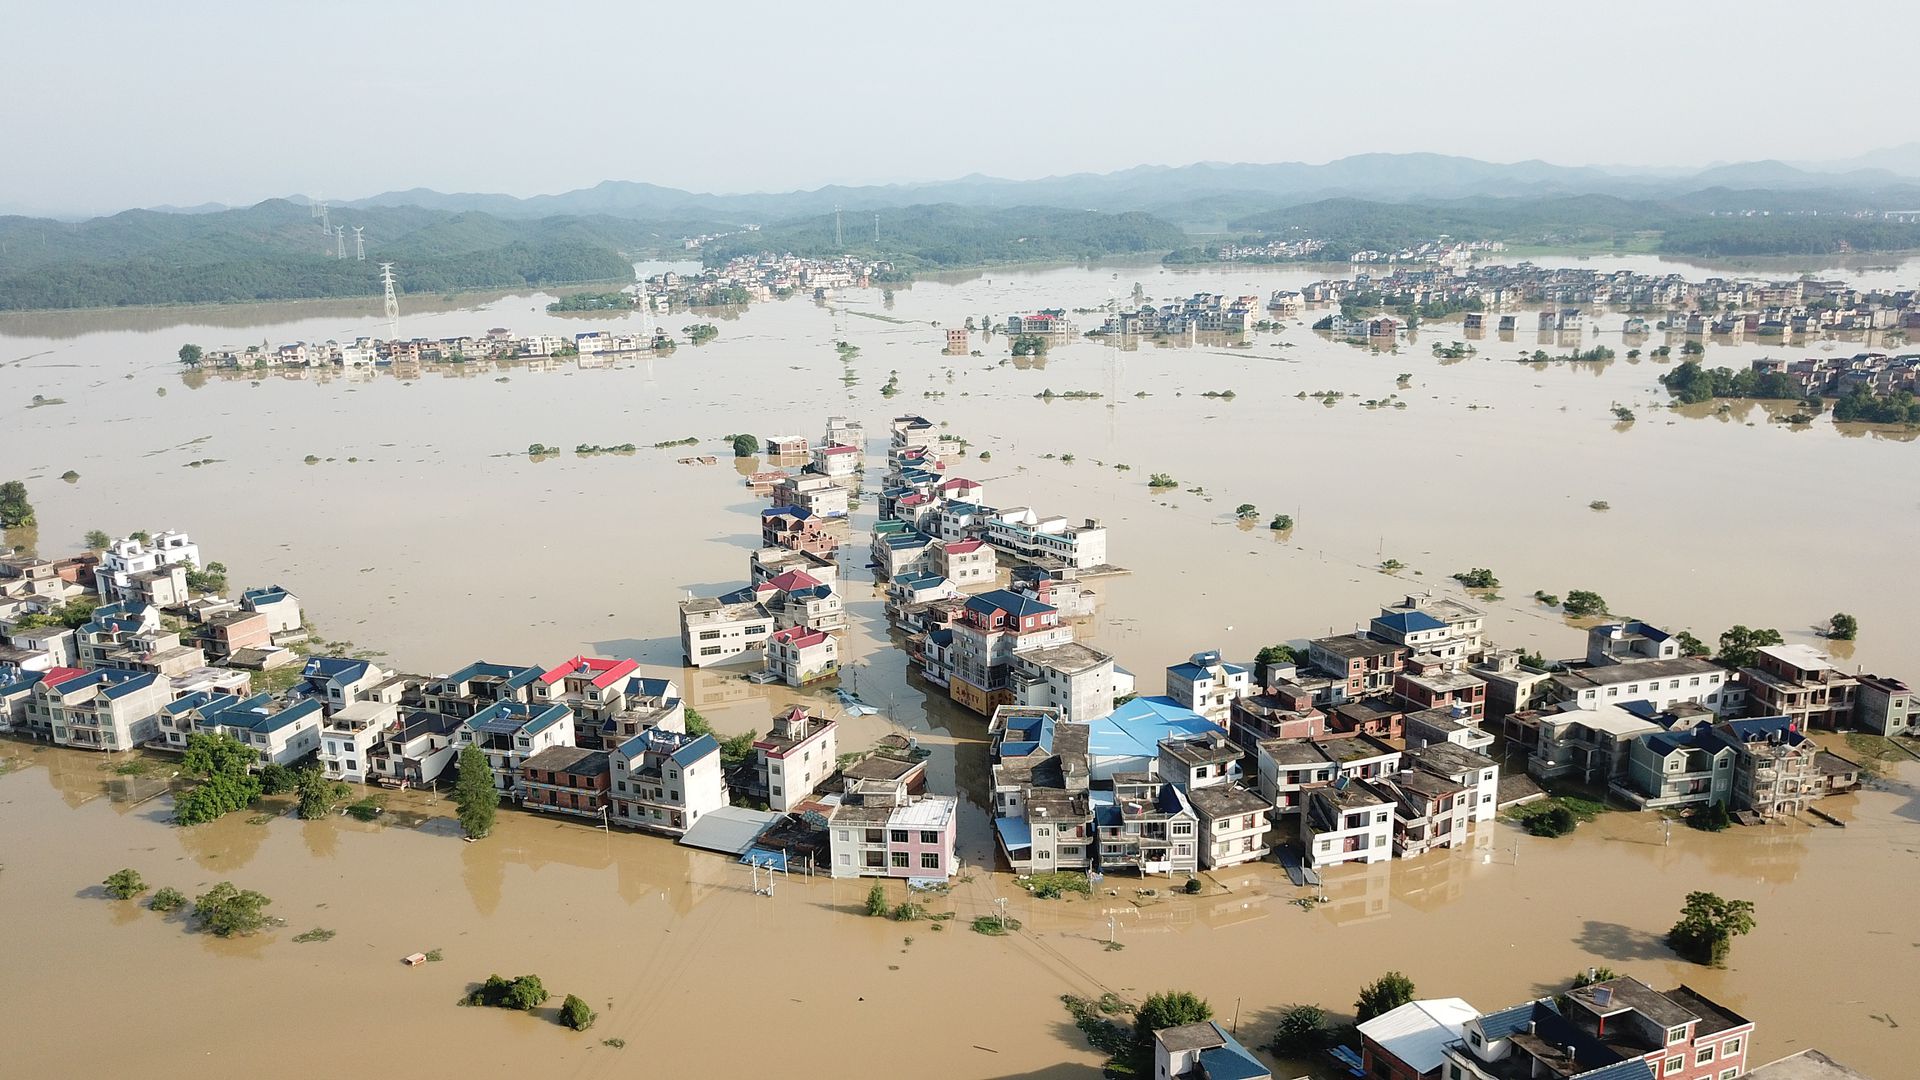 2020年中国南方洪灾，大量民房被淹，截至7月13日7时，共有141人死亡失踪。鄱阳湖流域正面临1998年以来最为严峻的防汛形势。 图为7月13日，江西上饶市的部分村民房屋和农田已被洪水淹没。（人民视觉）